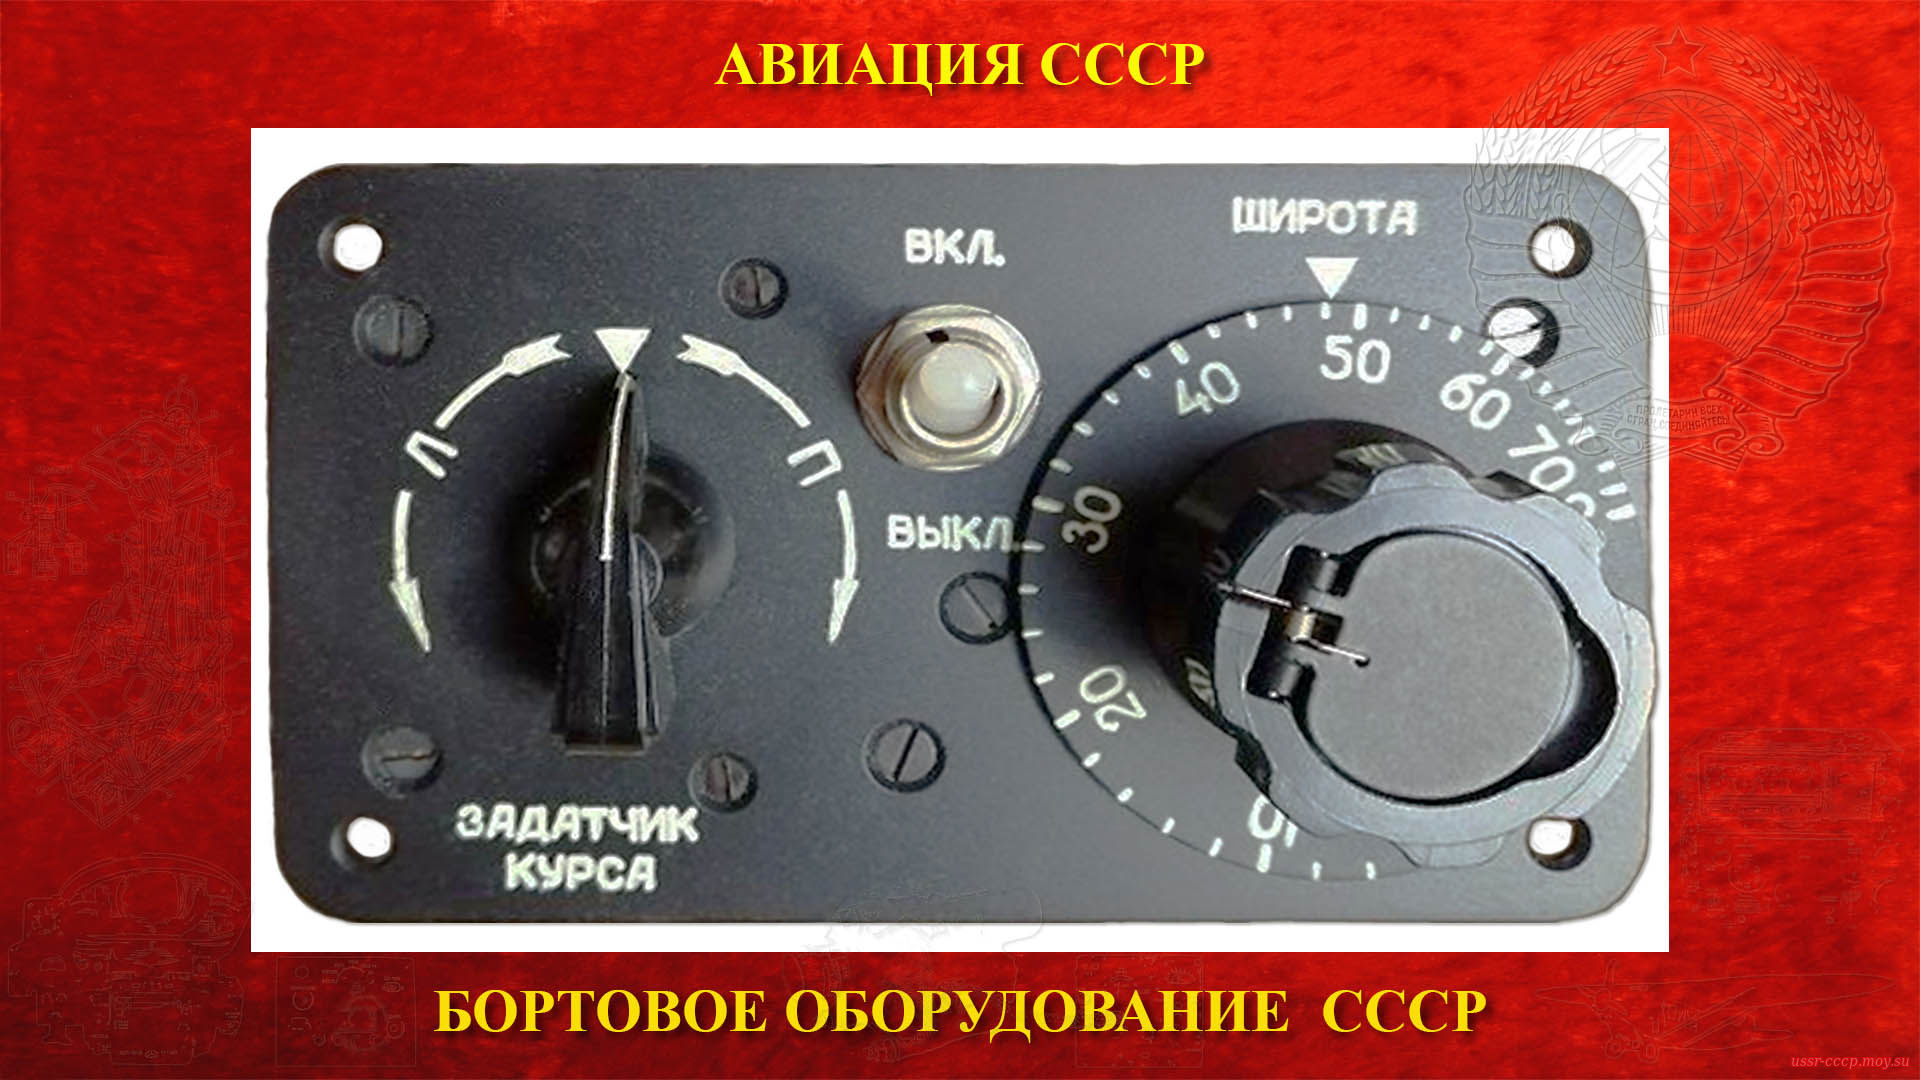 ГПК-52ПУ — Гирополукомпас СССР